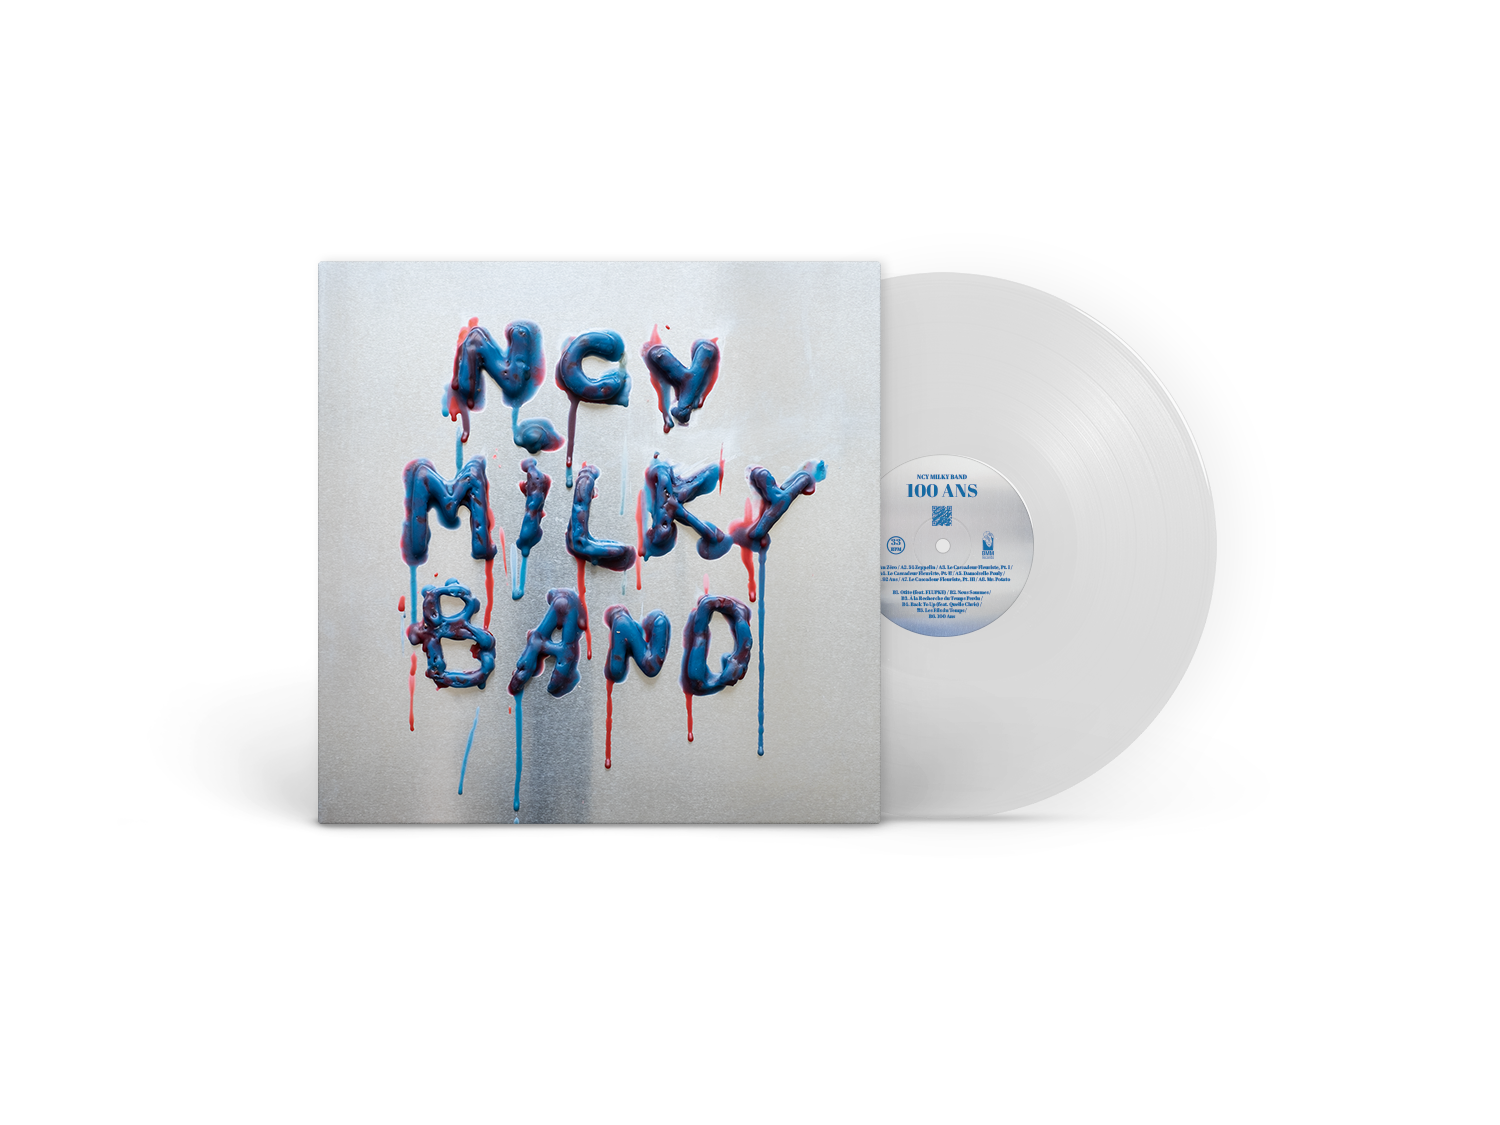 ncy milky band 100 ans clear vinyl